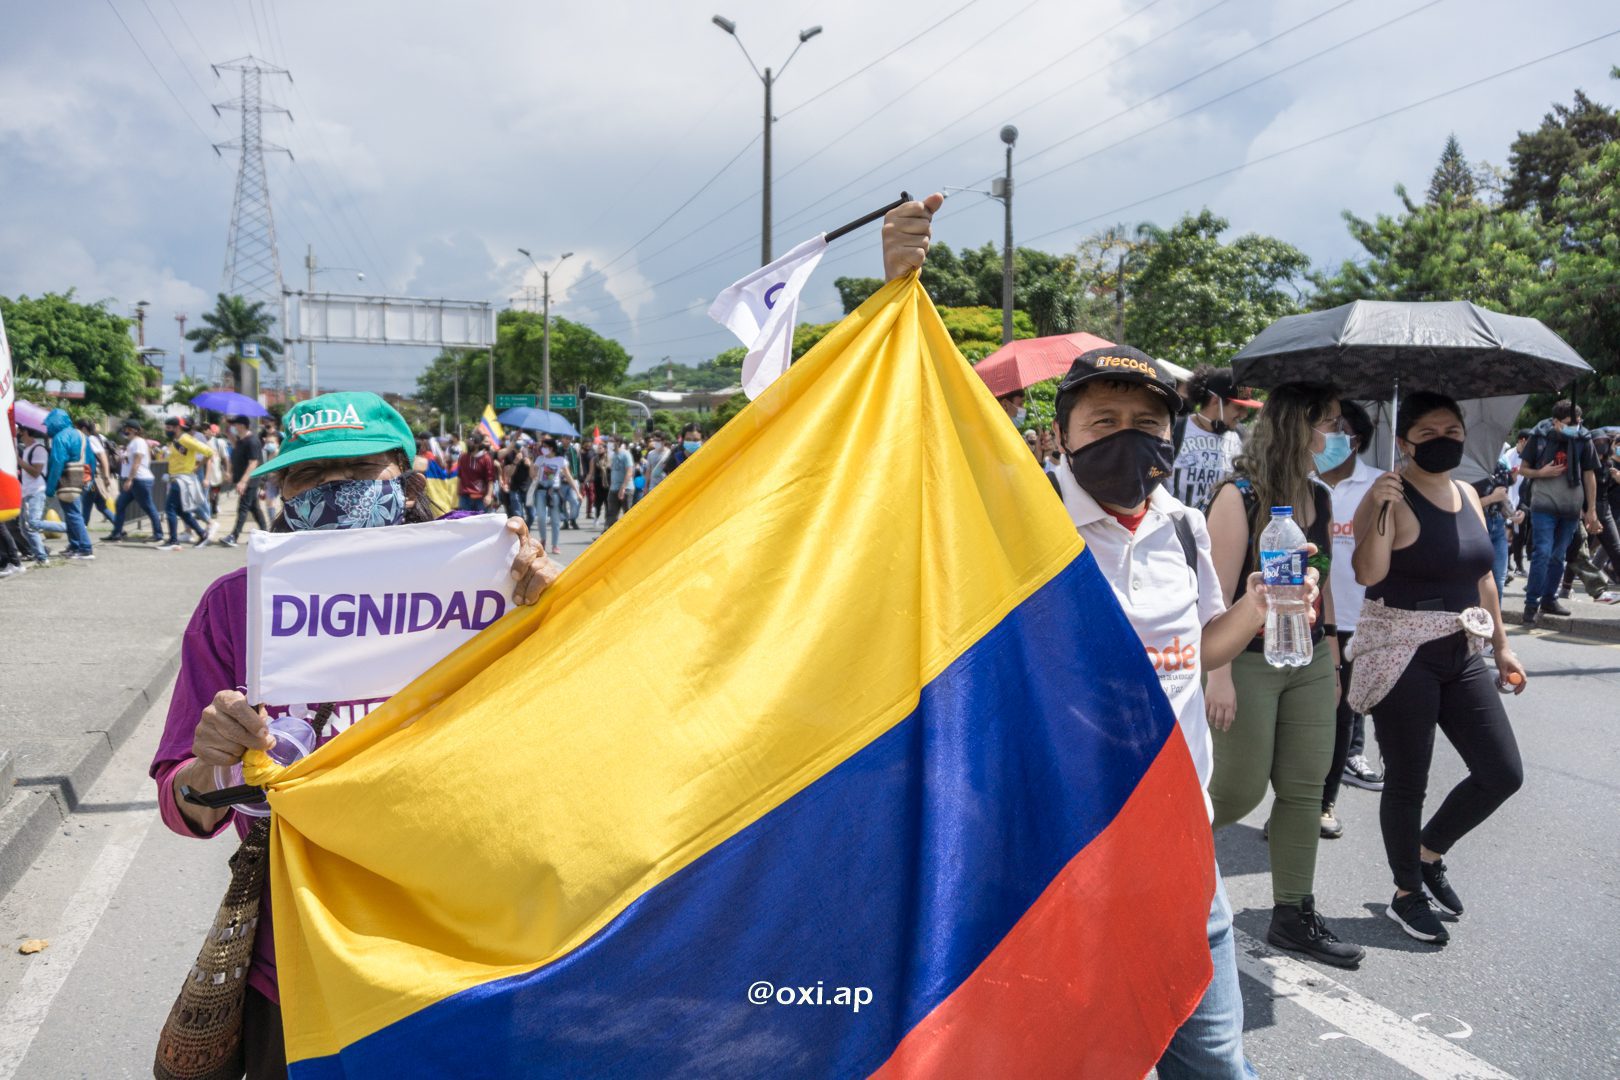 La Colombia approva la discussa riforma fiscale